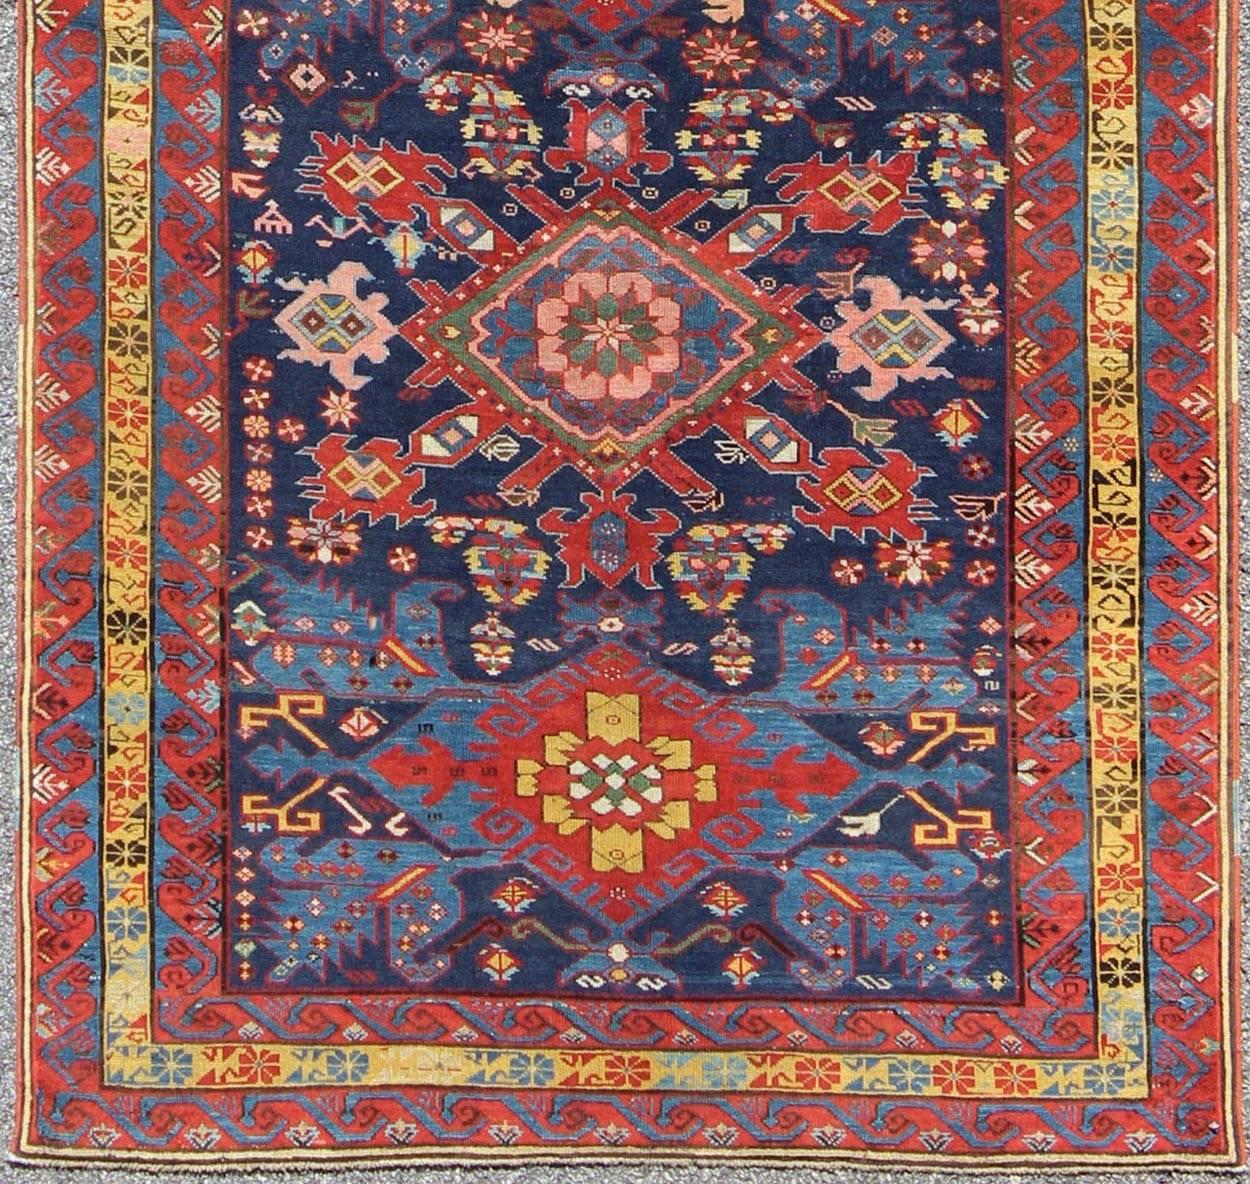 Dieser elegante Seychour-Teppich aus dem 19. Jahrhundert stammt aus der Gebirgsregion des Kaukasus. Eine schöne Reihe von fünf rautenförmigen Medaillons zieht sich über die gesamte Länge des Teppichs, der in verschiedenen satten Blau-, Rot- und